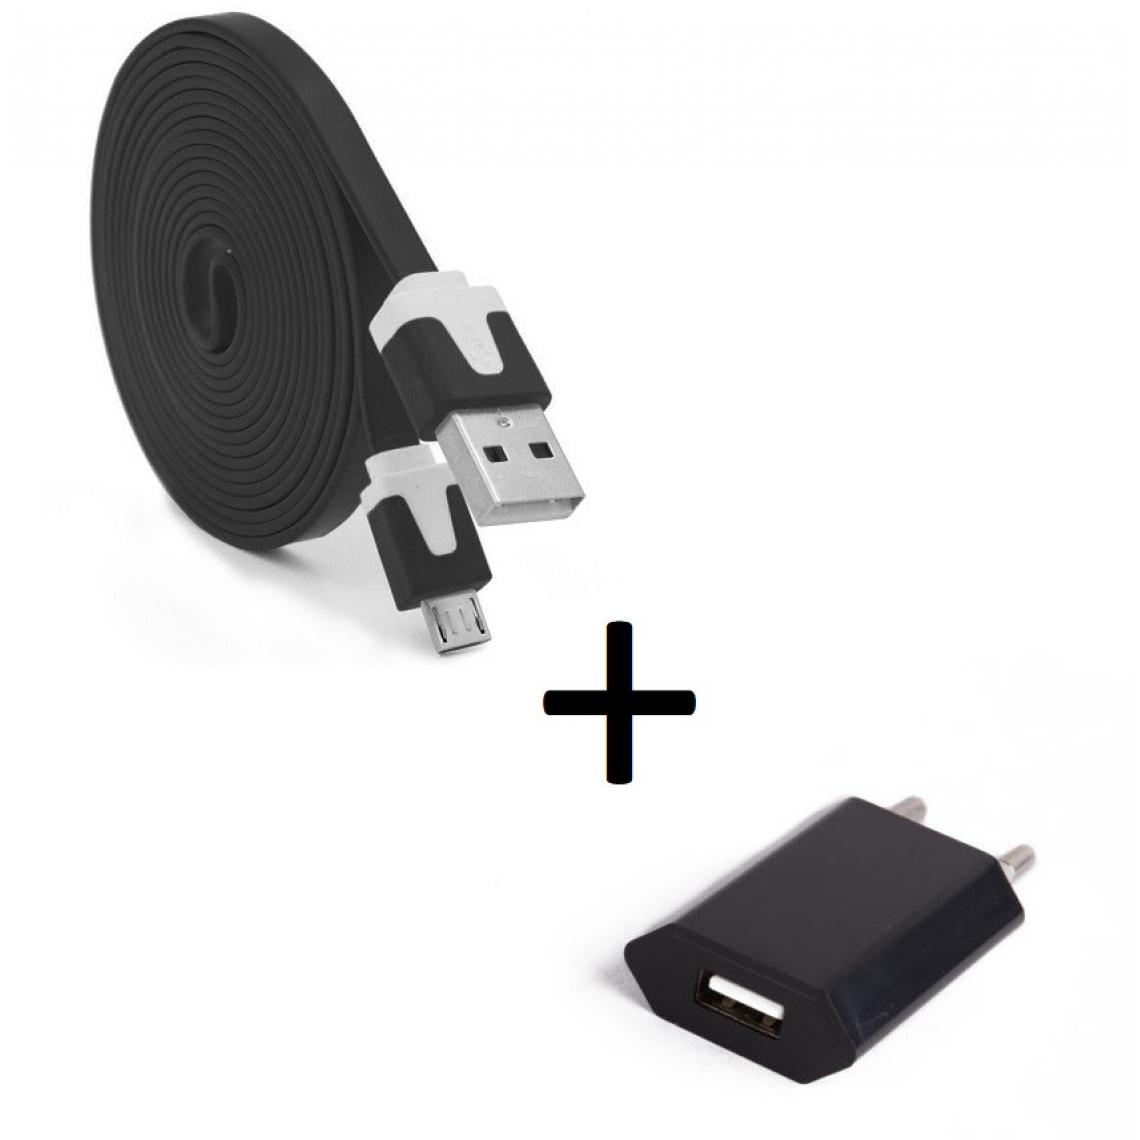 Shot - Pack Chargeur pour HUAWEI Y6 2019 Micro USB (Cable Noodle 3m + Prise Secteur Couleur USB) Android (NOIR) - Chargeur secteur téléphone